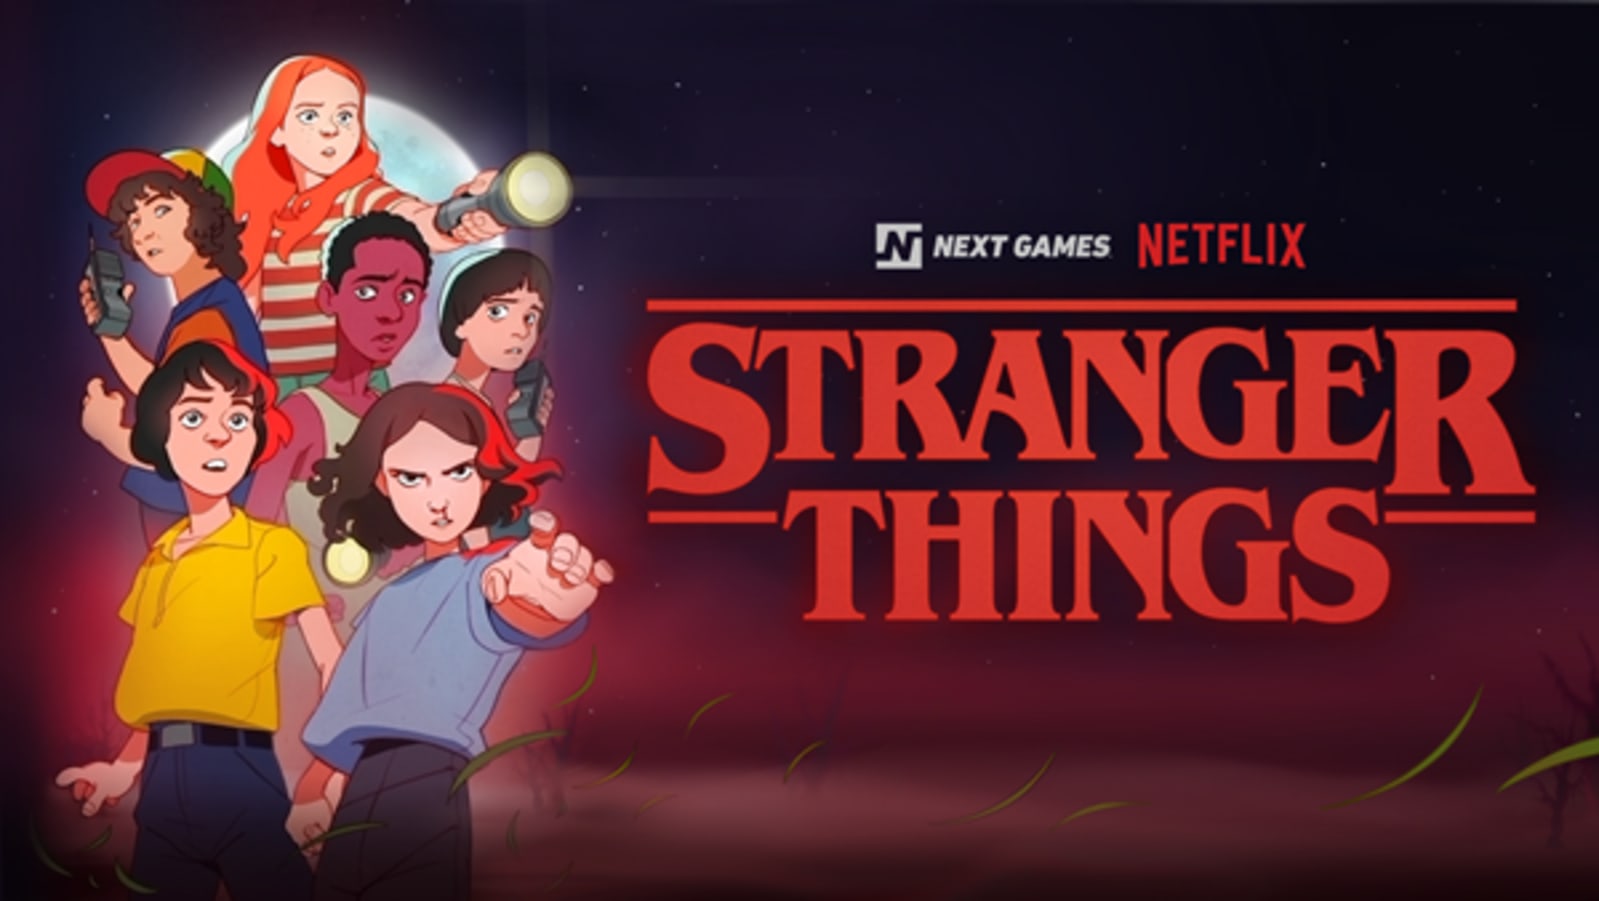 'Stranger Things' mobile game